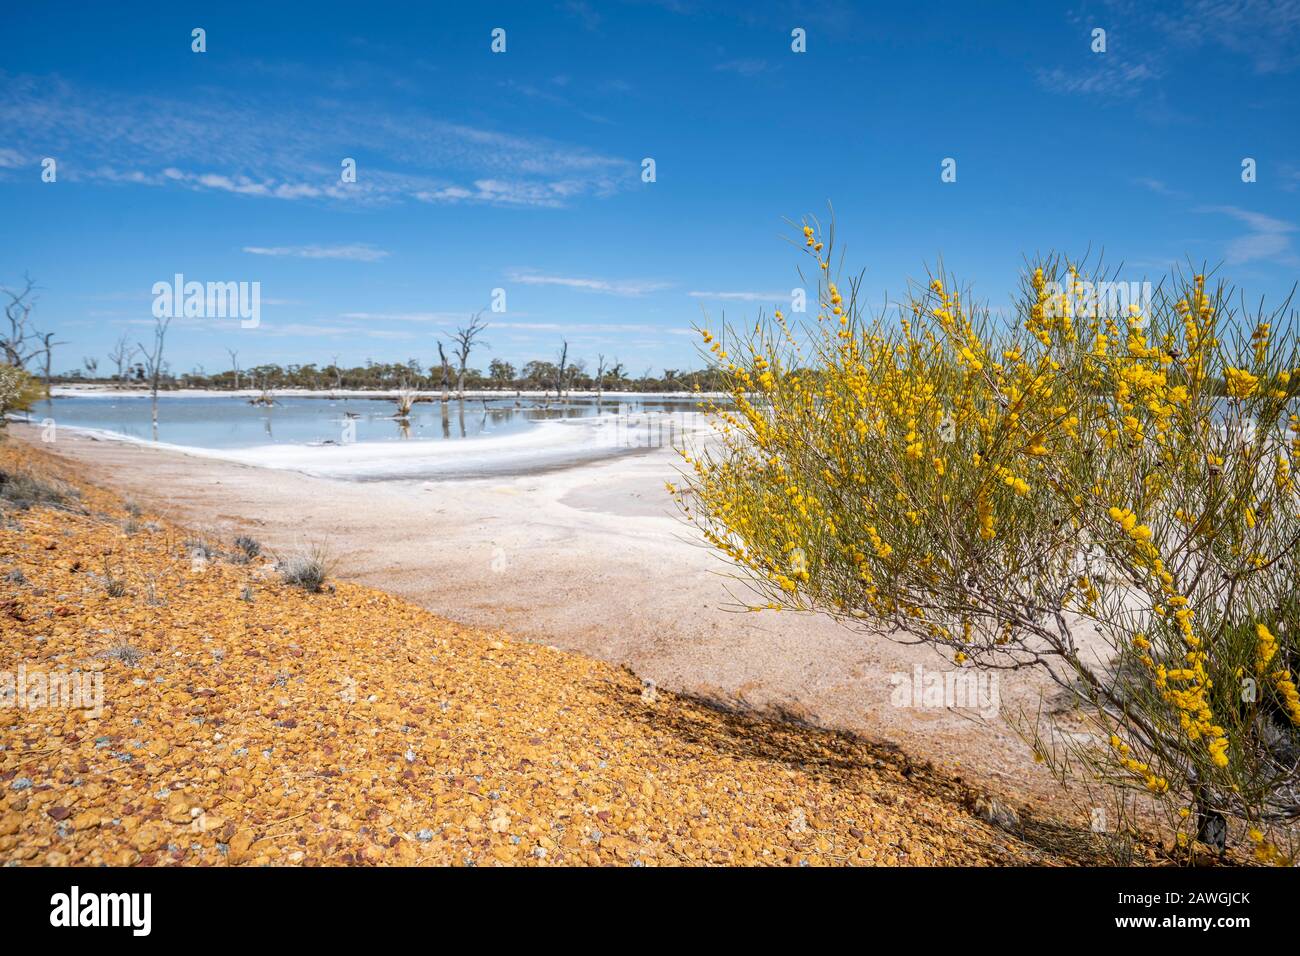 Pequeño matorral cubierto de flores silvestres amarillas que crecen al lado de Job Lake, un lago de sal cerca de Beacon, Australia Occidental Foto de stock